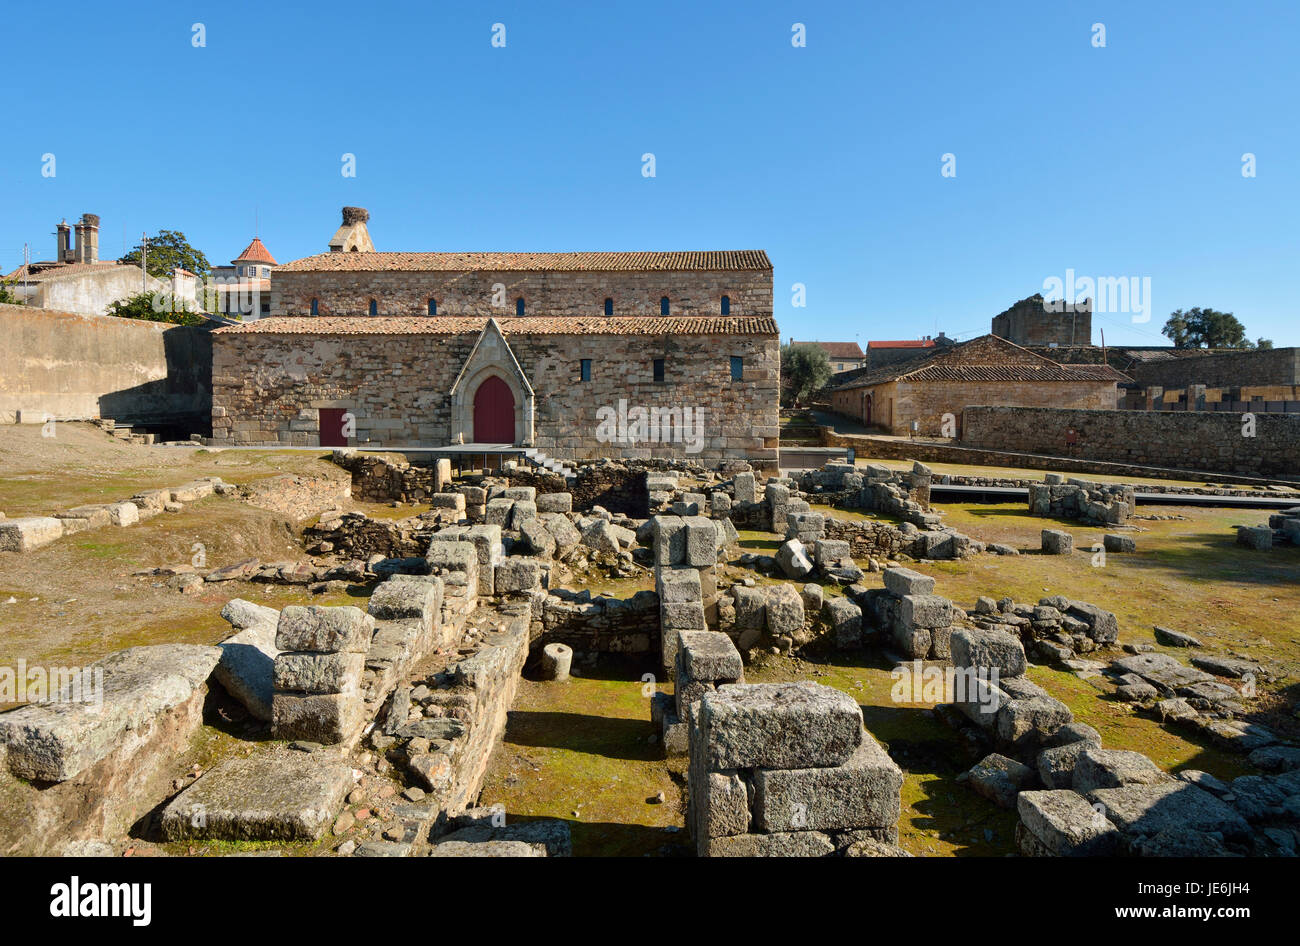 Casa Romana e Chiesa di Santa Maria nel villaggio storico di Idanha a Velha. Portogallo Foto Stock